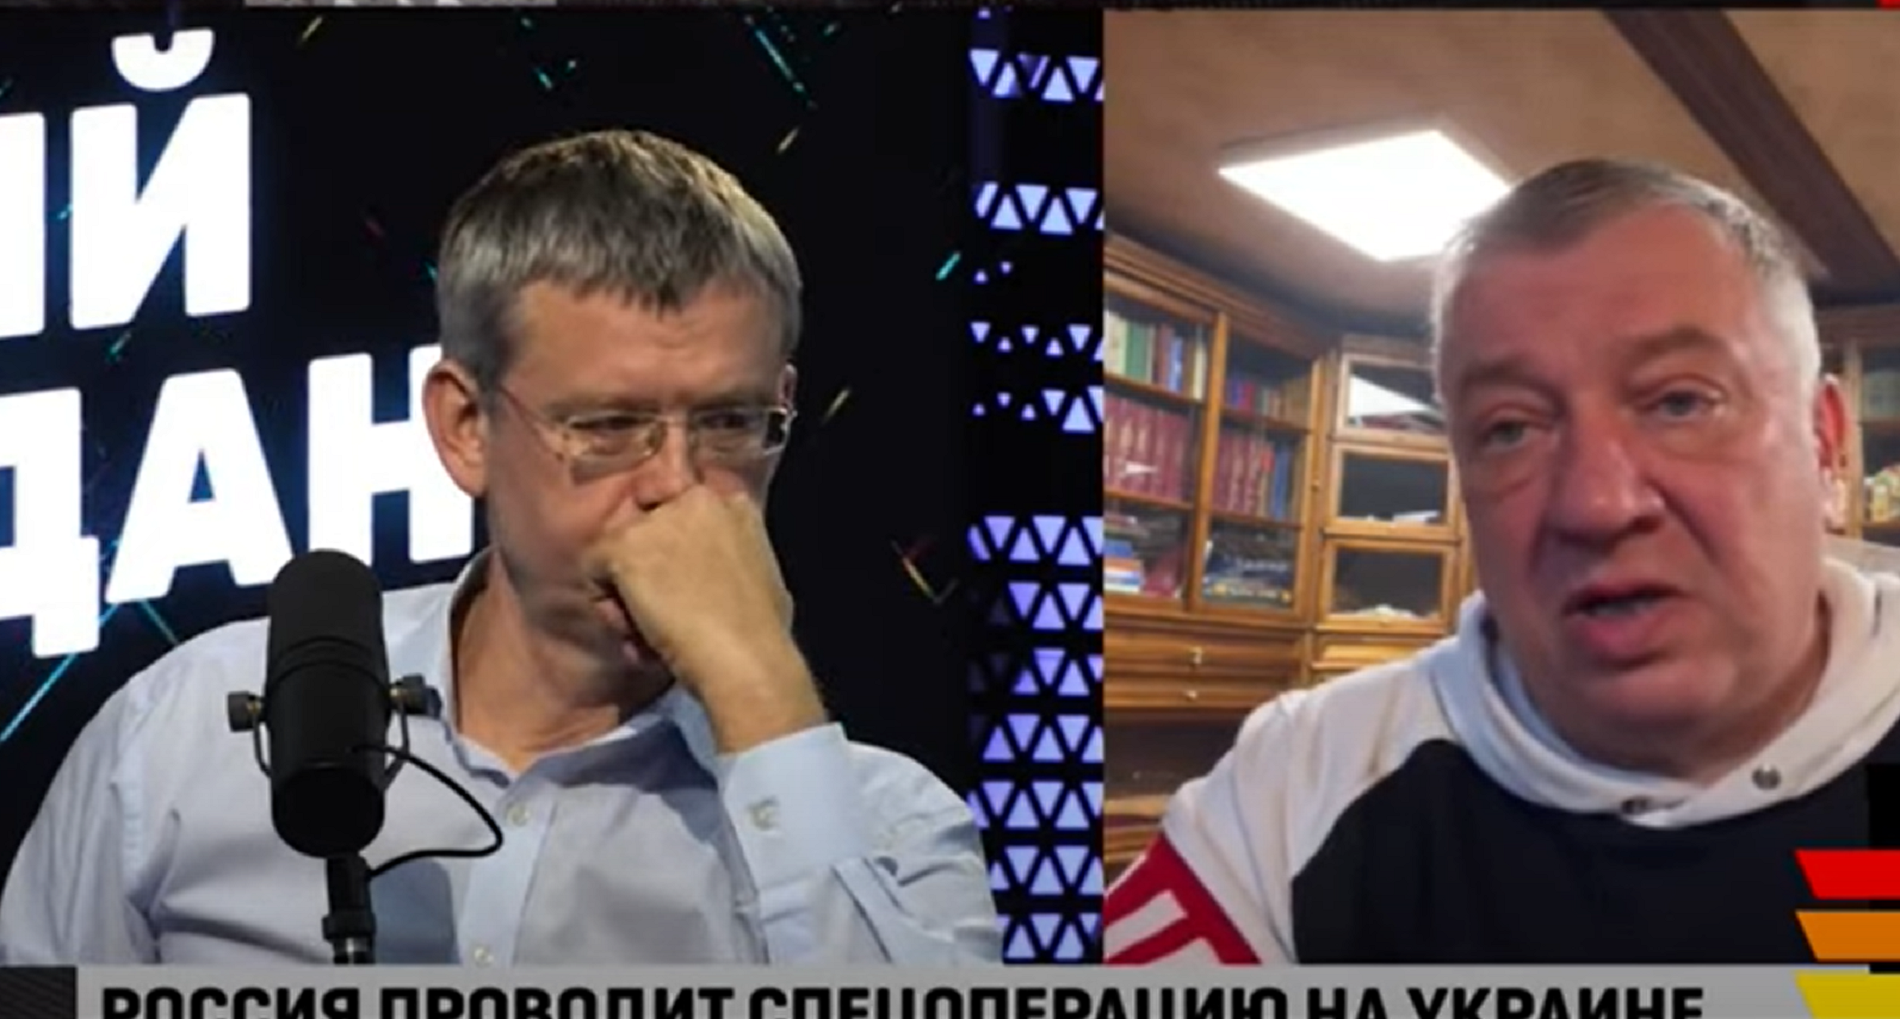 Estupor en la TV rusa por las pérdidas en Ucrania: "¿Qué está pasando?"